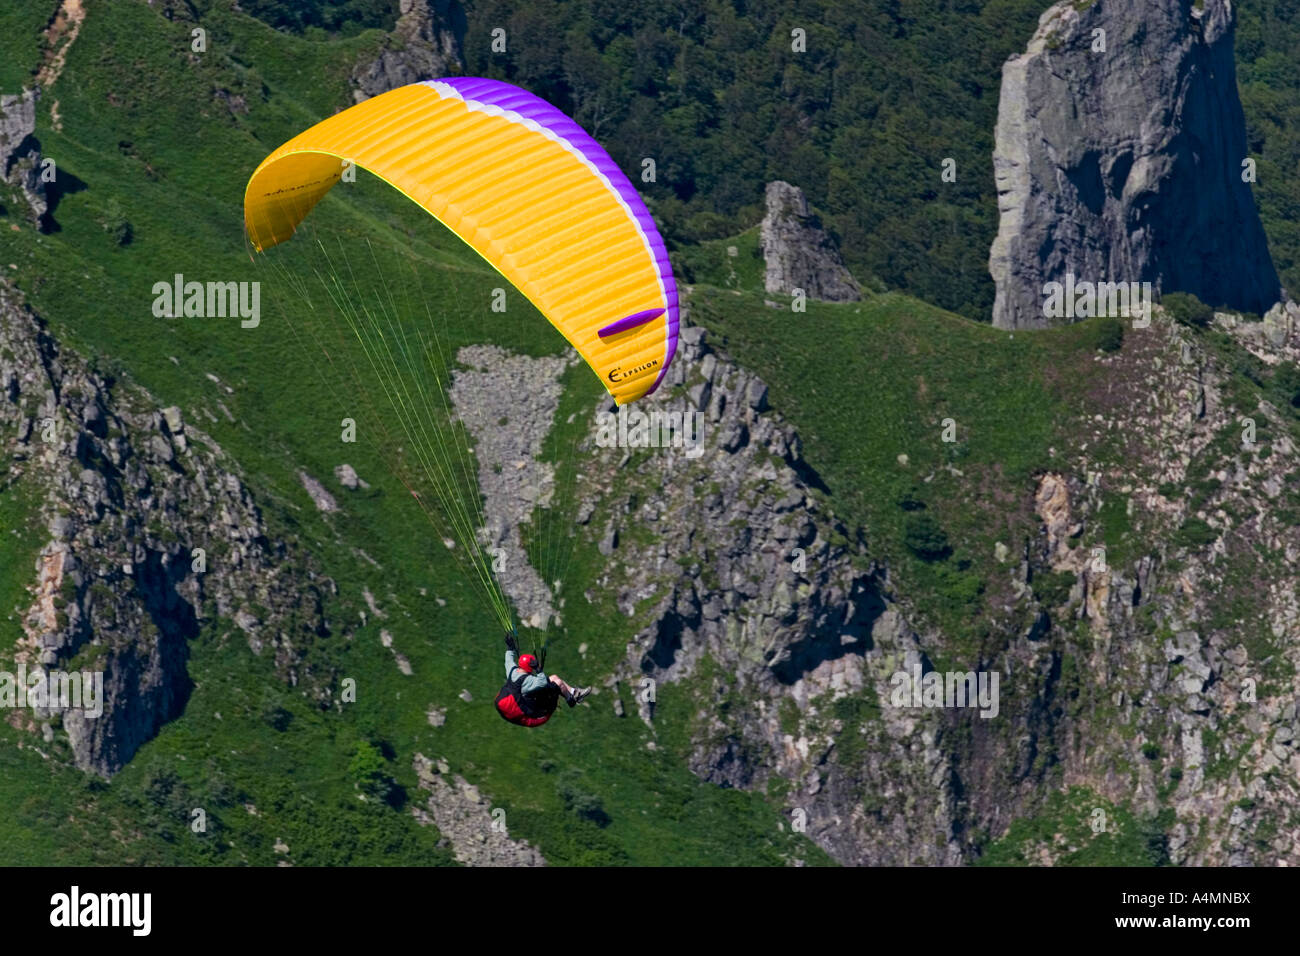 A paraglider over the Sancy Massif (Puy de Dôme - France). Parapentiste en vol dans le massif du Sancy (Puy de Dôme - France). Stock Photo